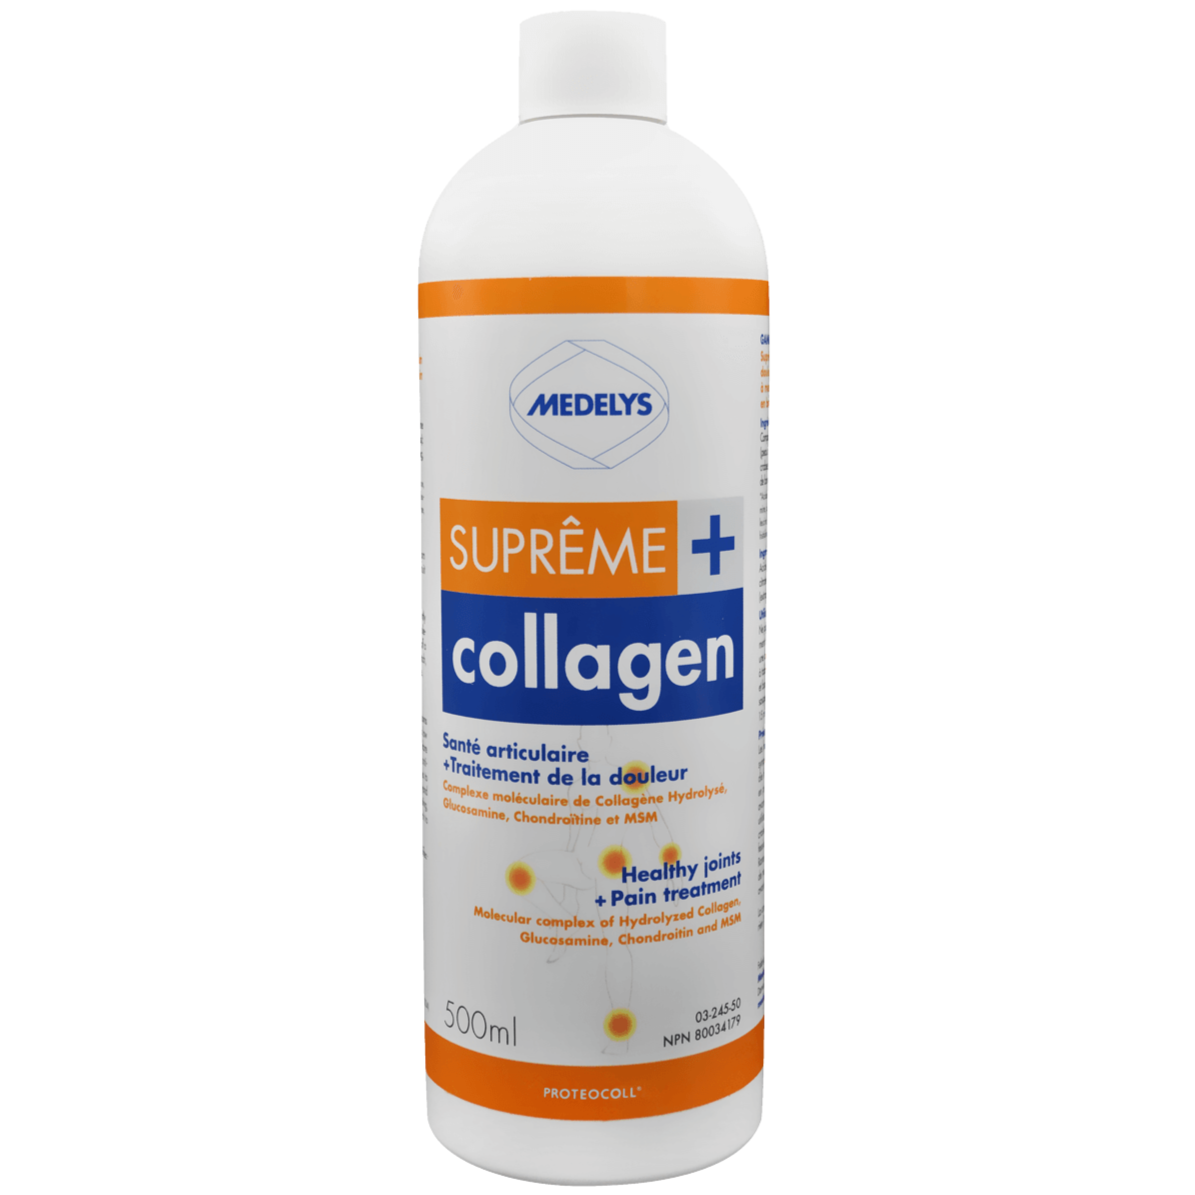 Medelys Supreme Collagen + 500mL Supplements - Collagen at Village Vitamin Store